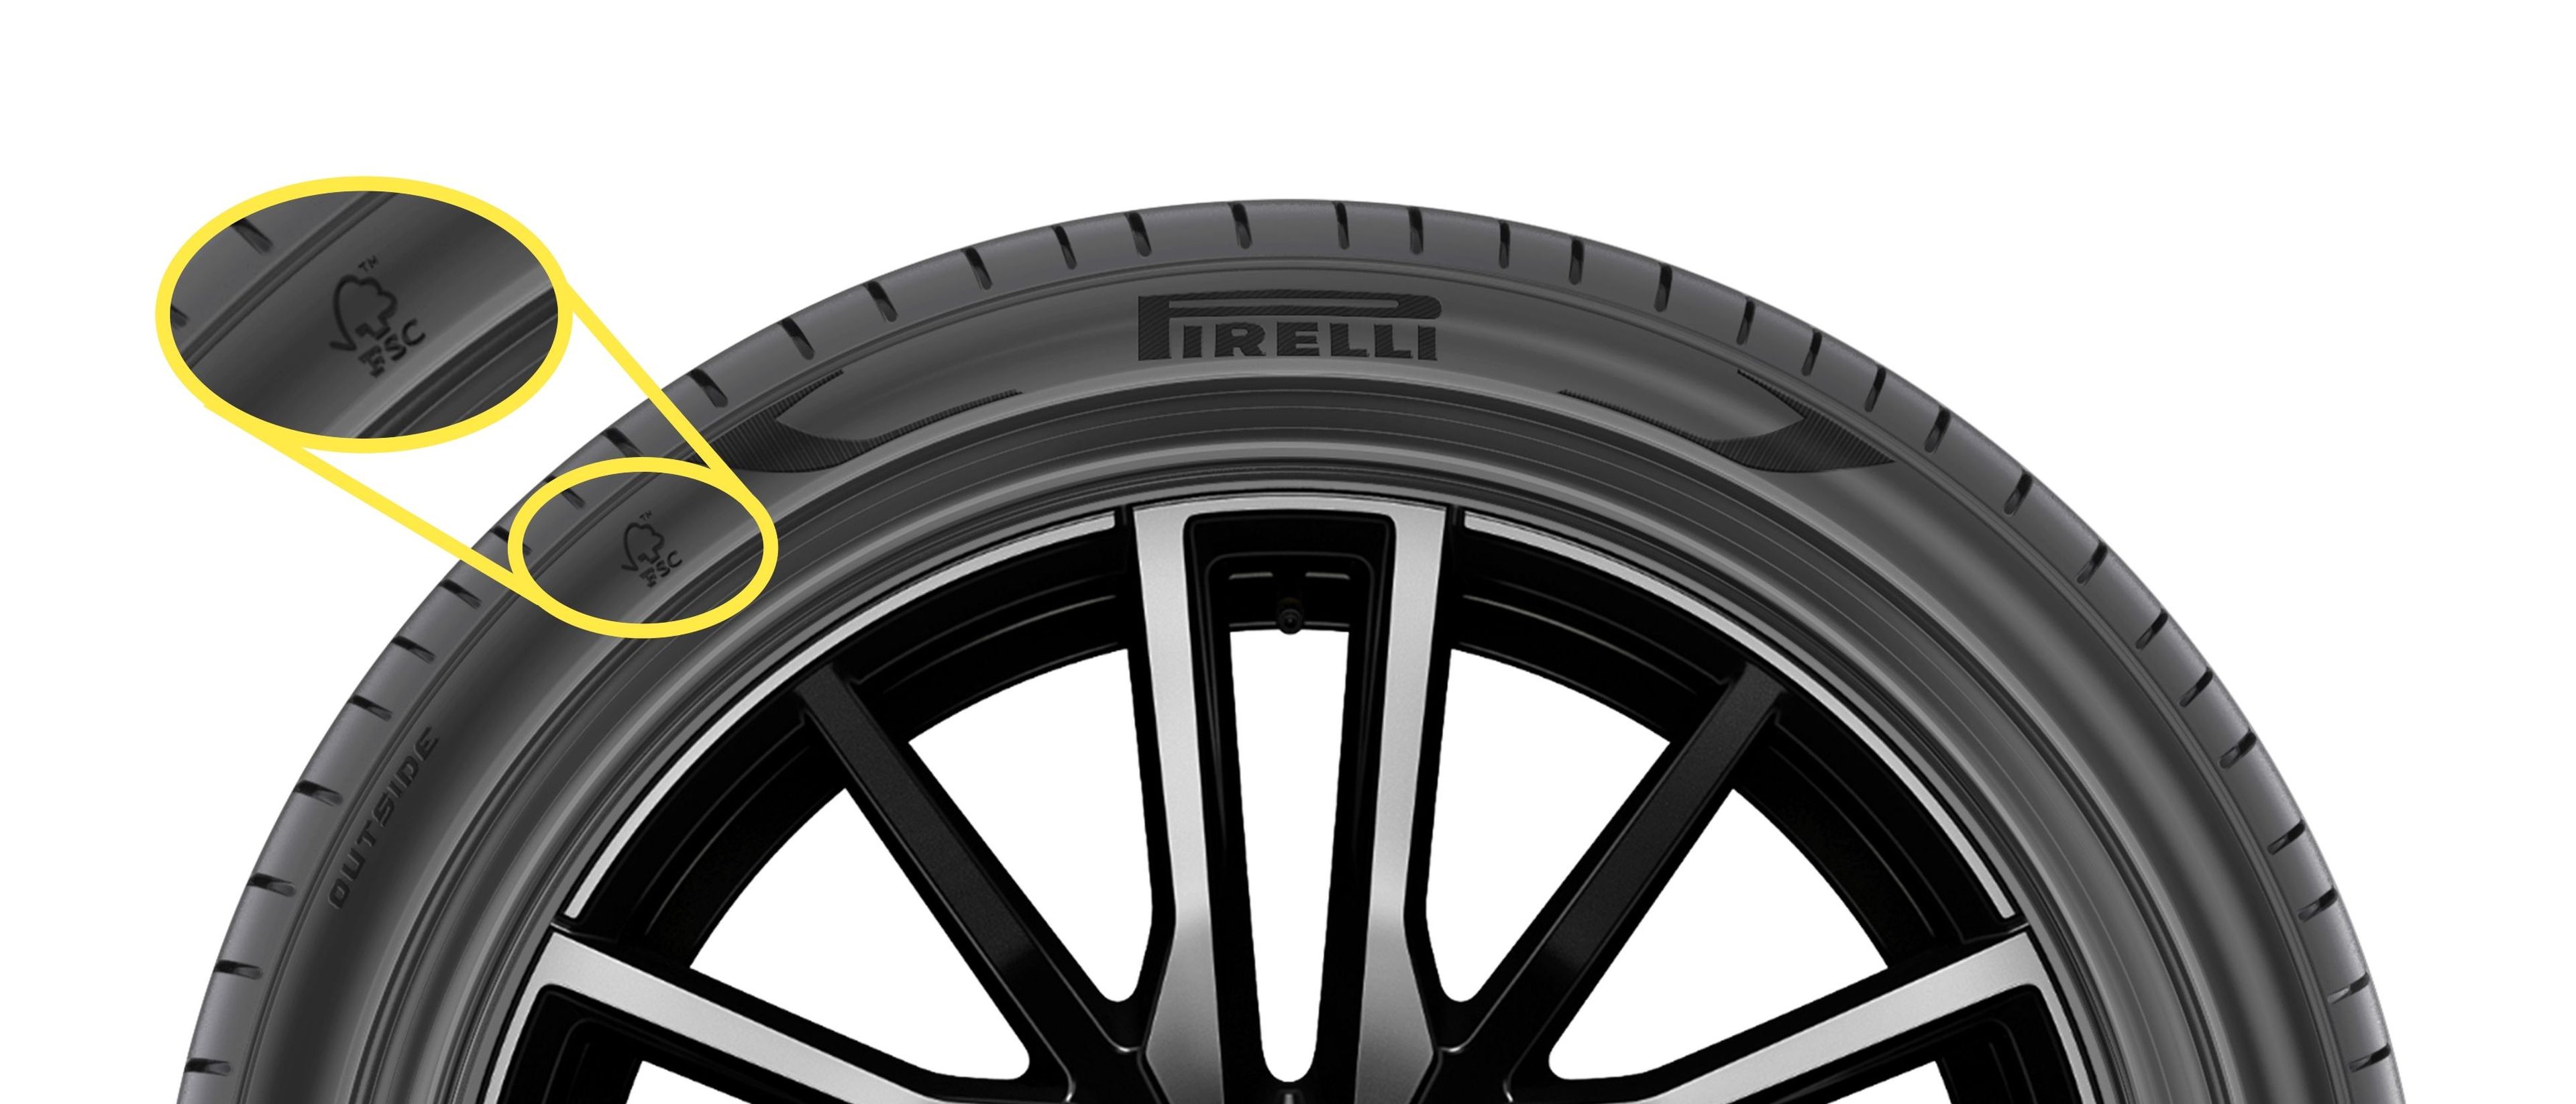 bmw y pirelli, neumáticos sostenibles para el BMW X5 híbrido enchufable